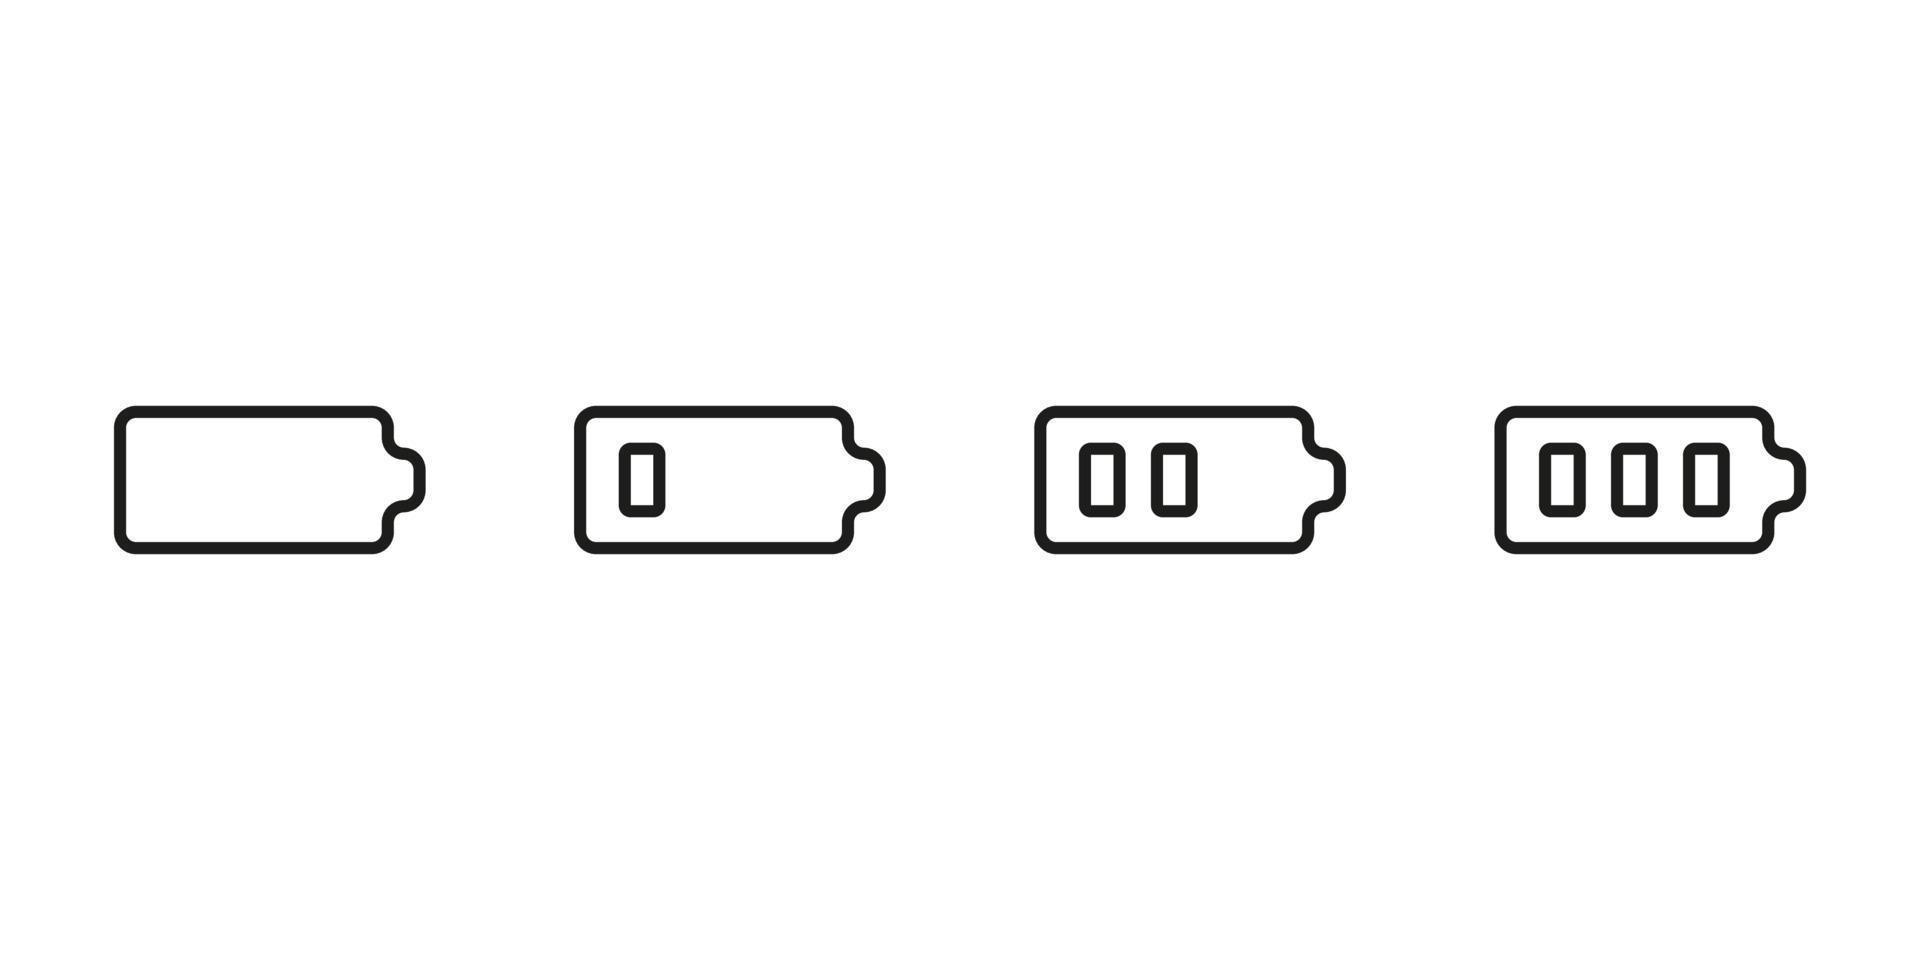 stel de energiebatterij in van laag naar vol, lijnpictogram. power batterij met energie. vector teken